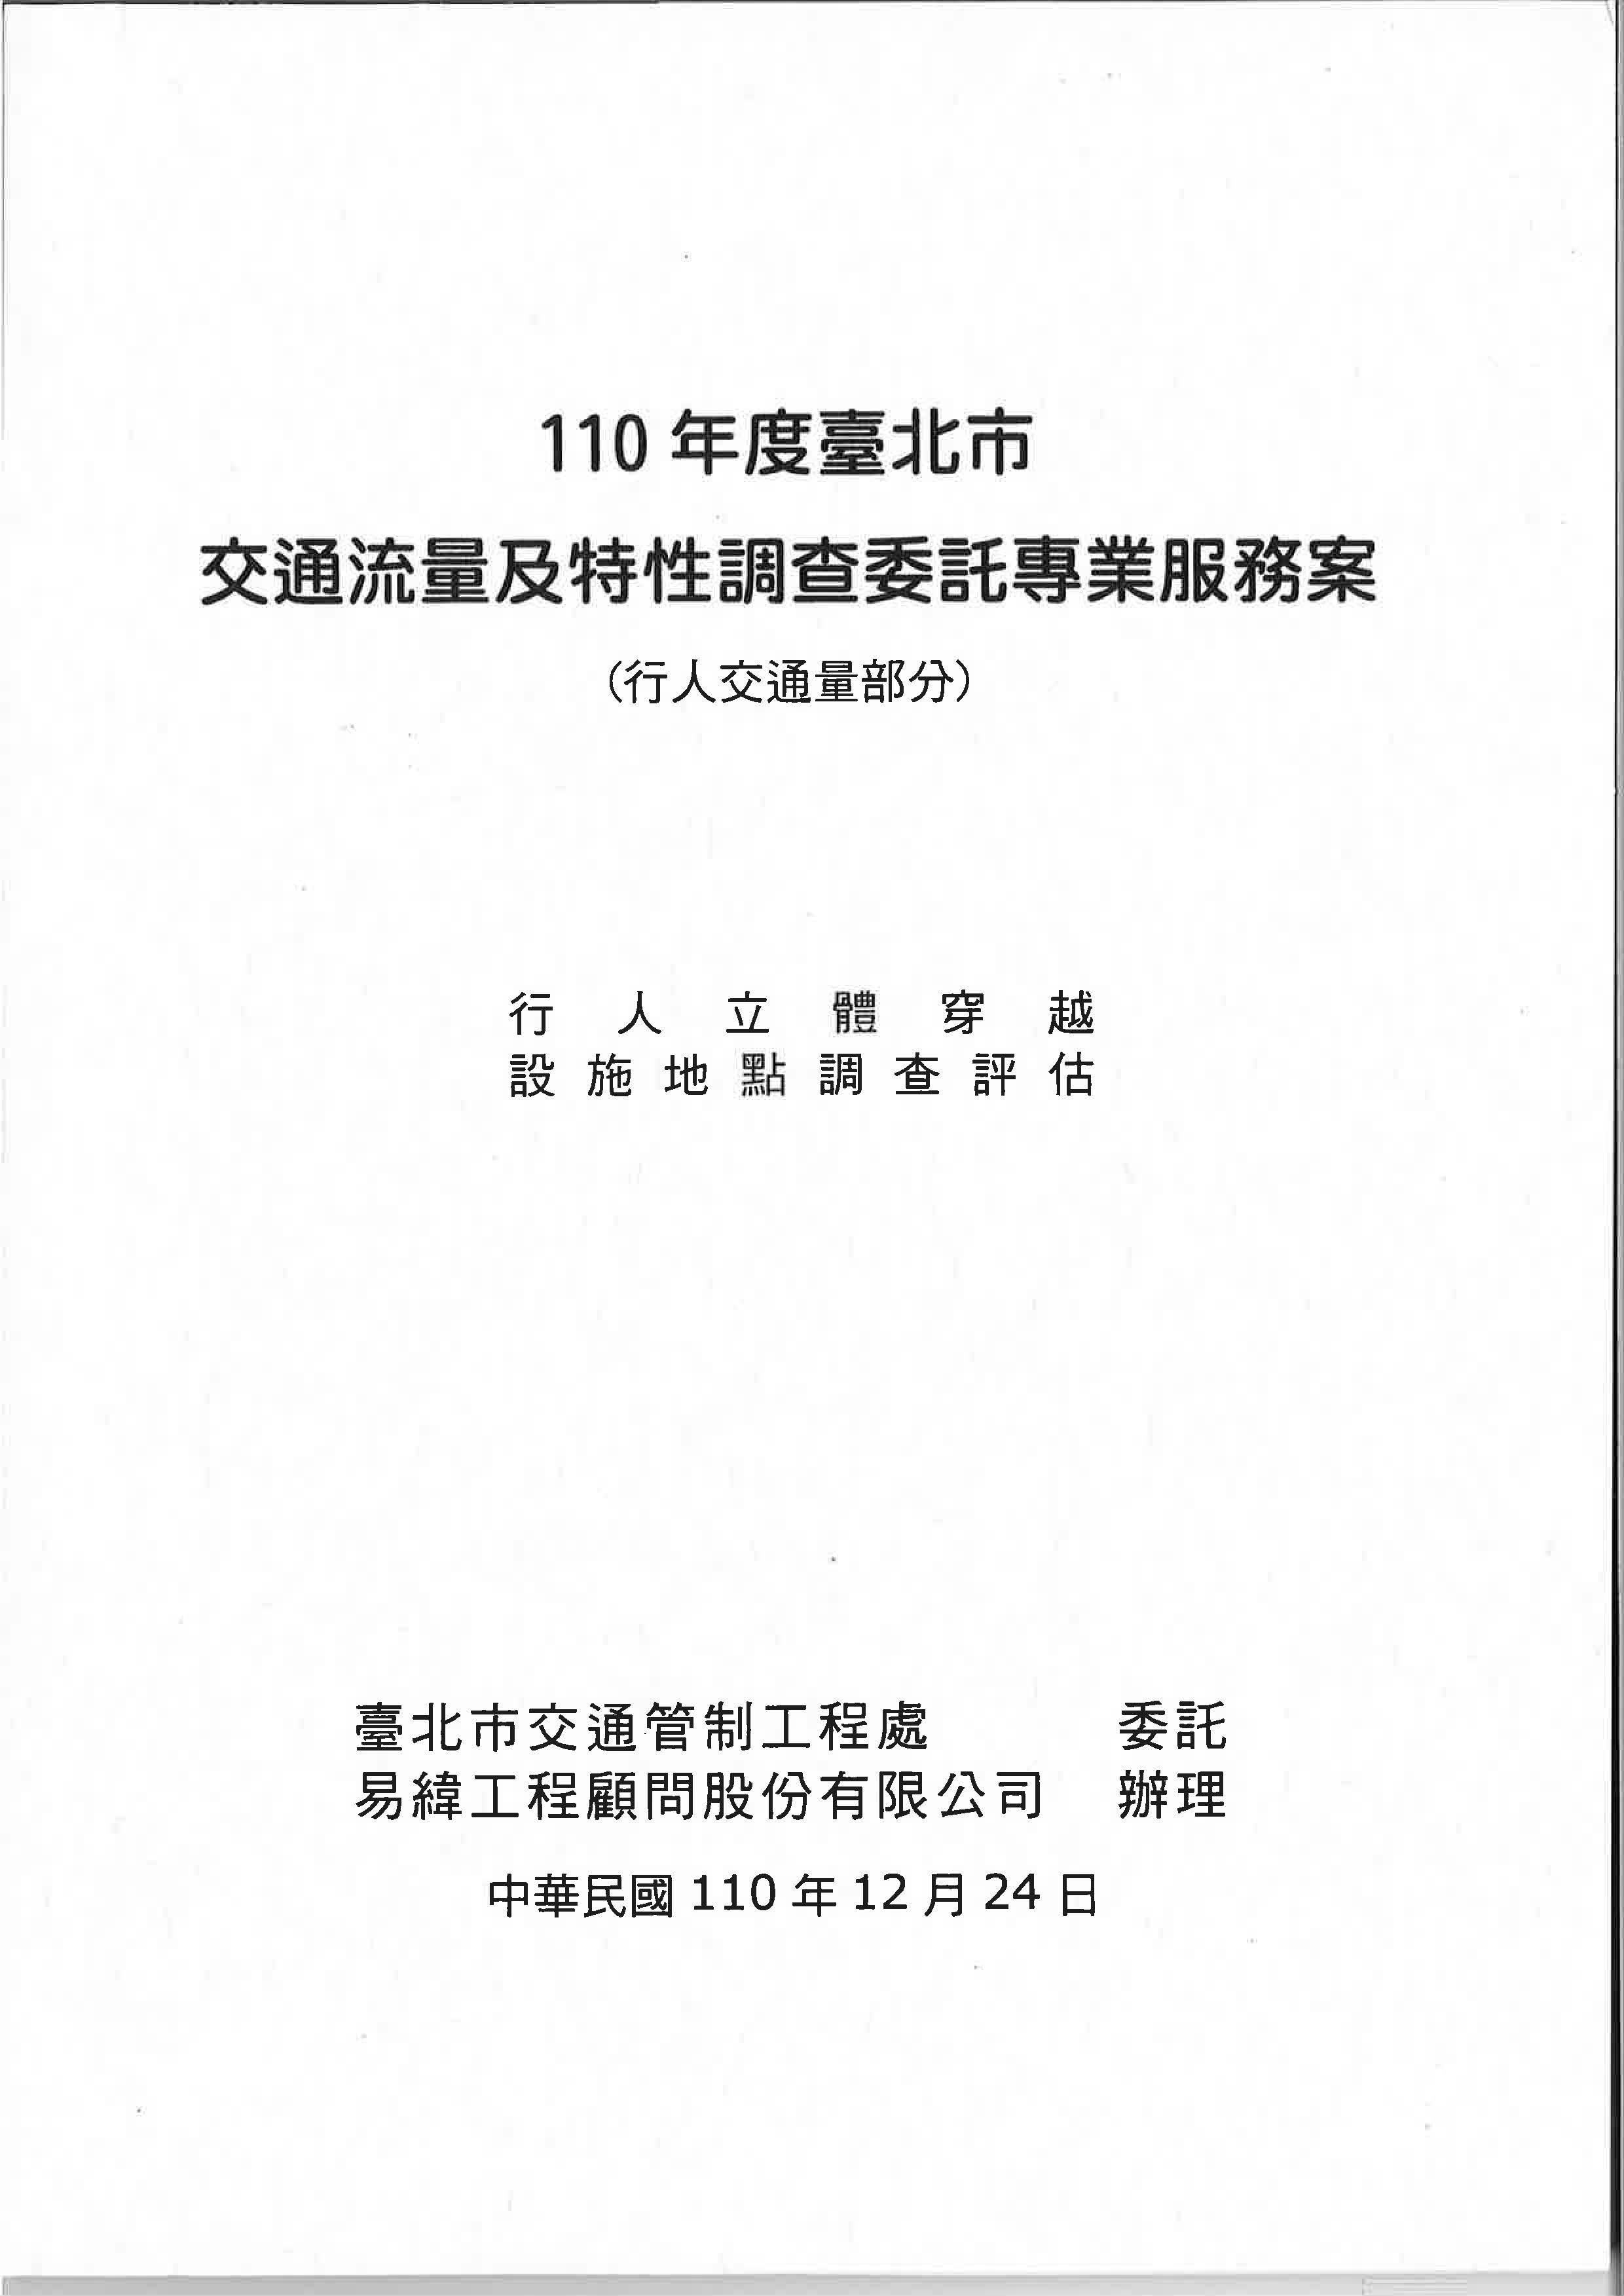 110年度臺北市交通流量及特性調查委託專業服務案(行人交通量部分)